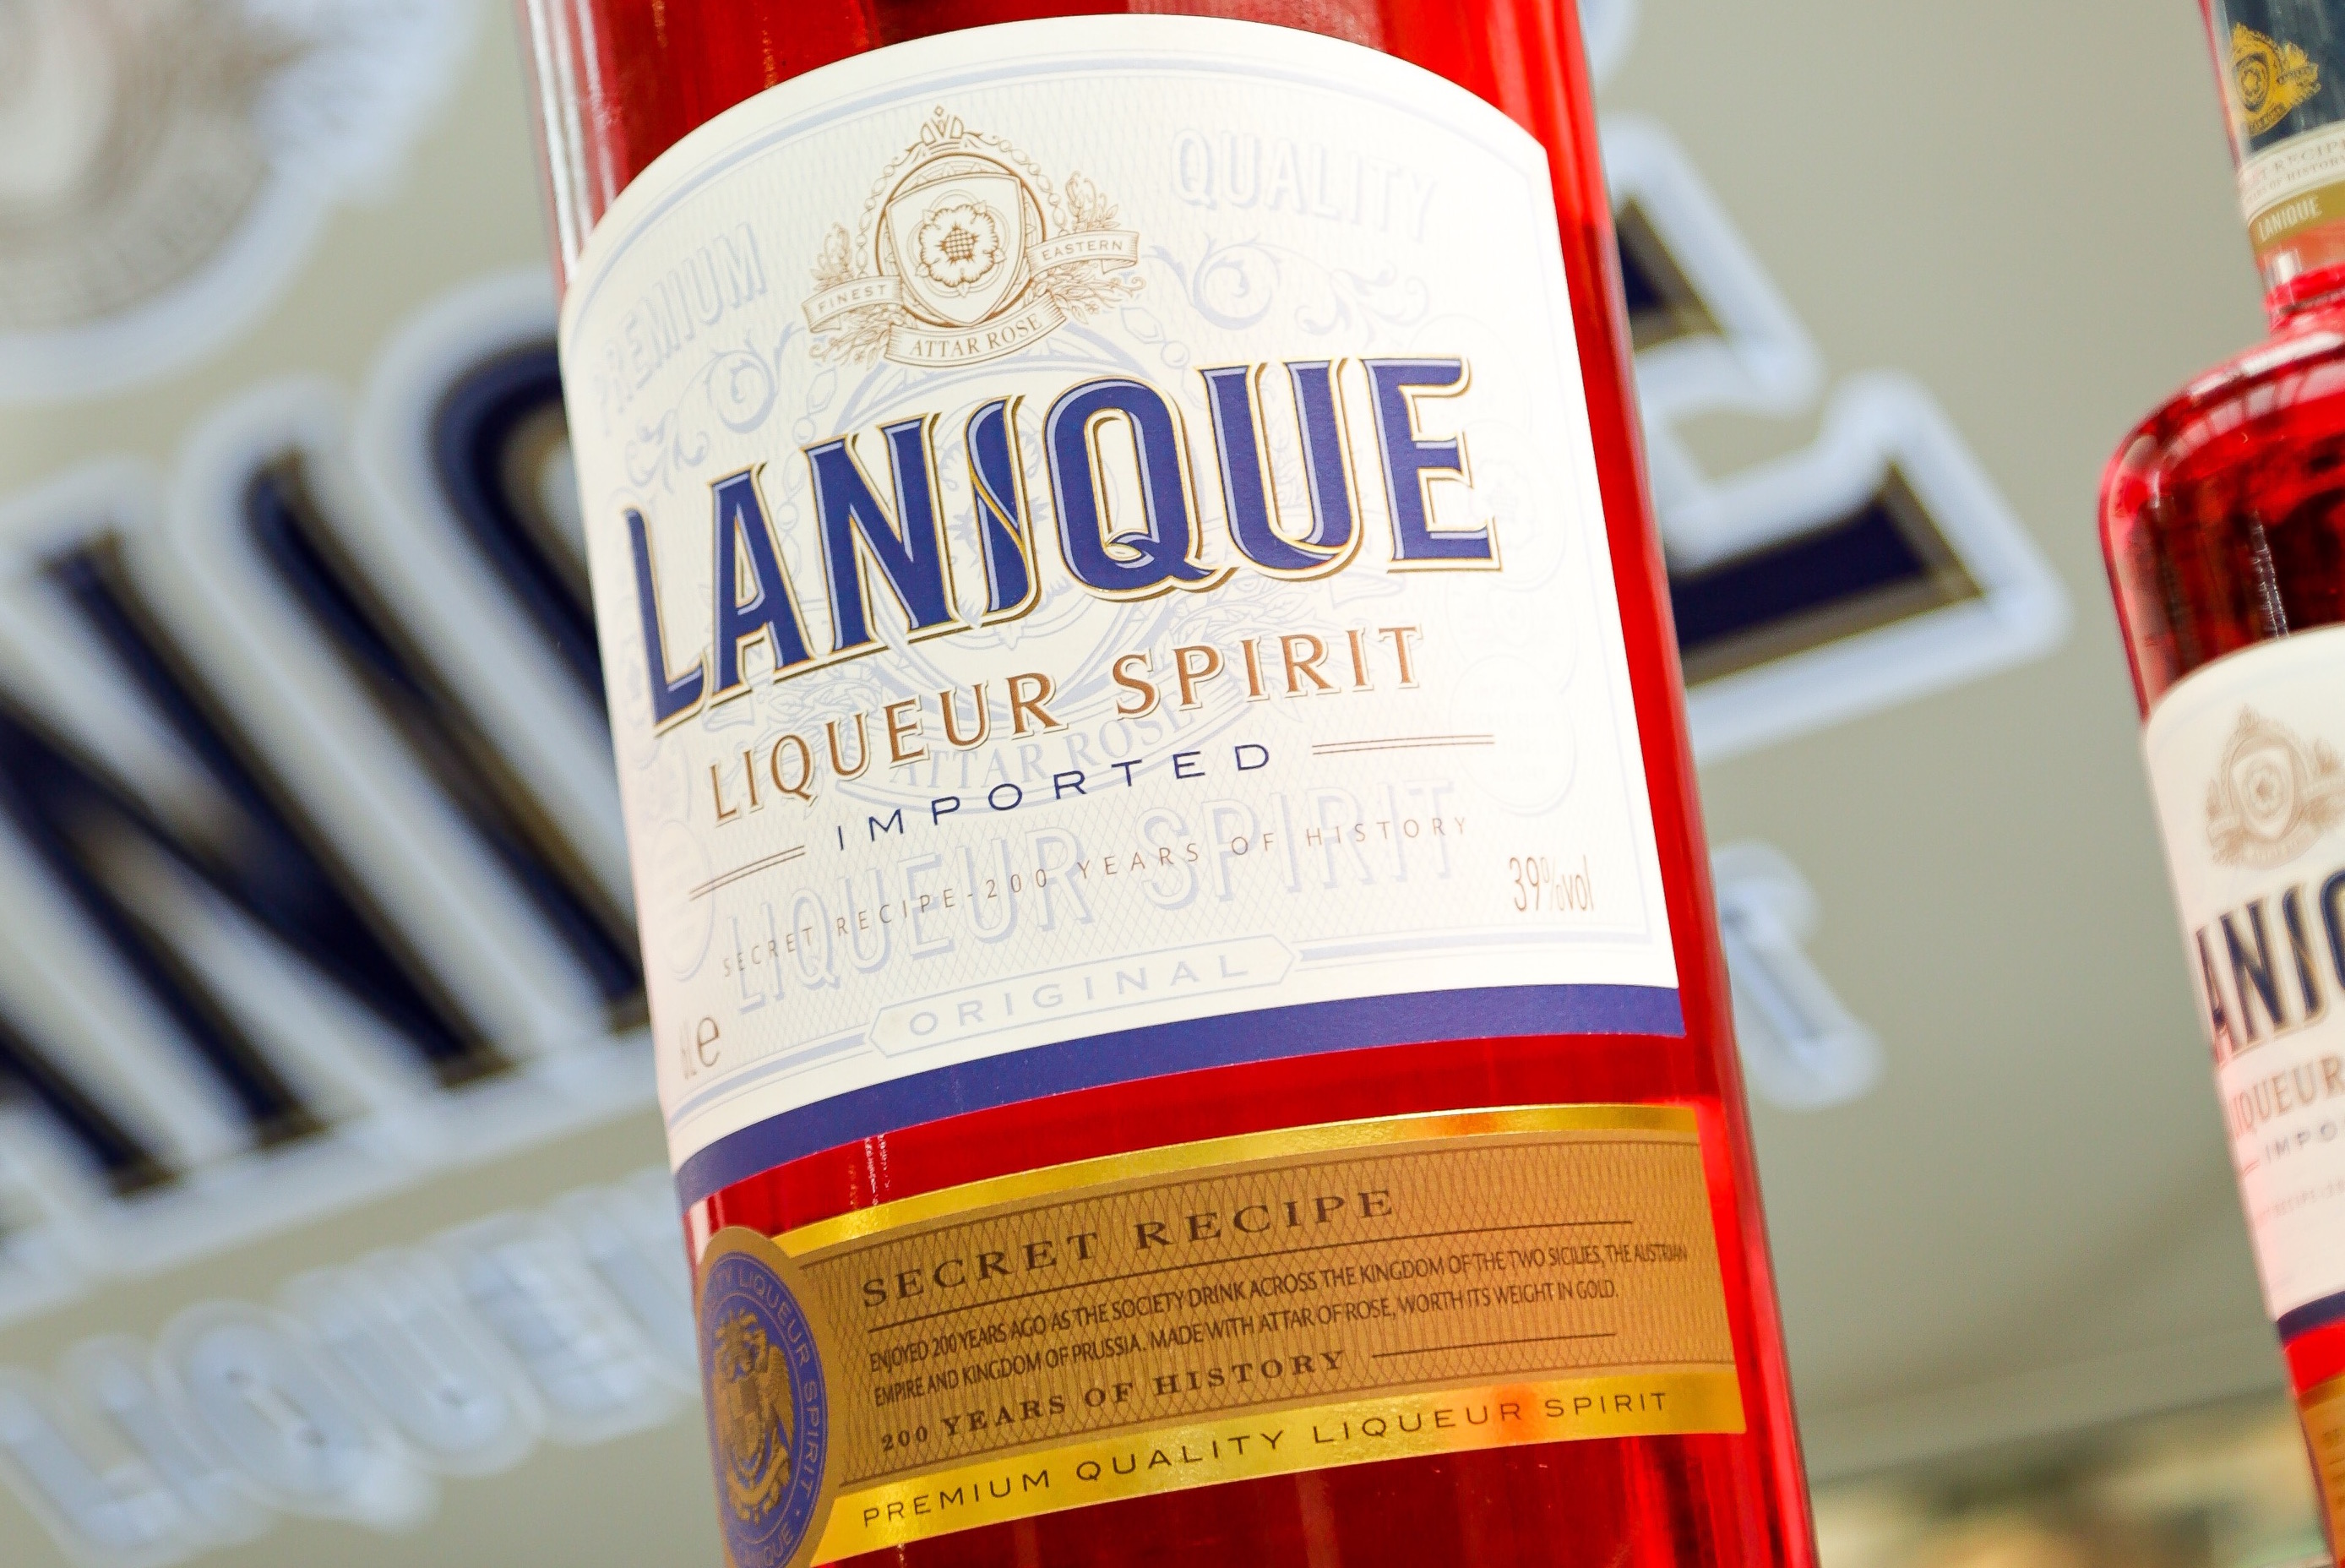 The Label Makers Partnerships With Lanique Liqueur Spirit